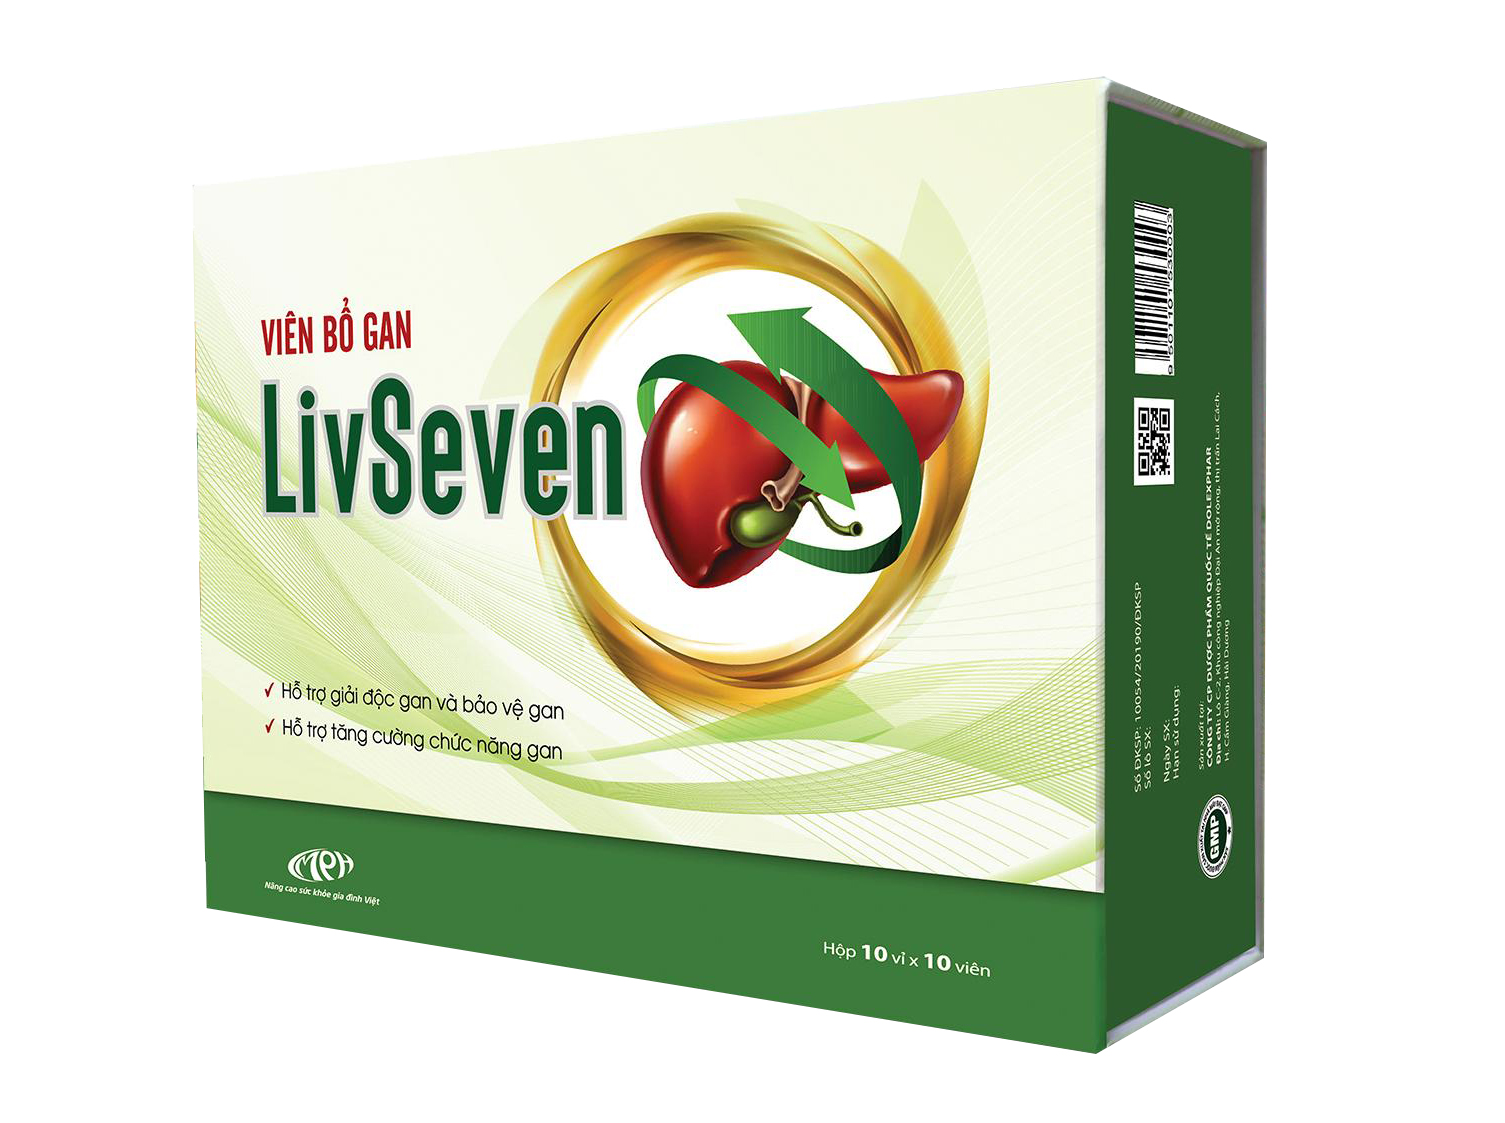 Viên bổ gan Livseven có tác dụng giải độc gan không?